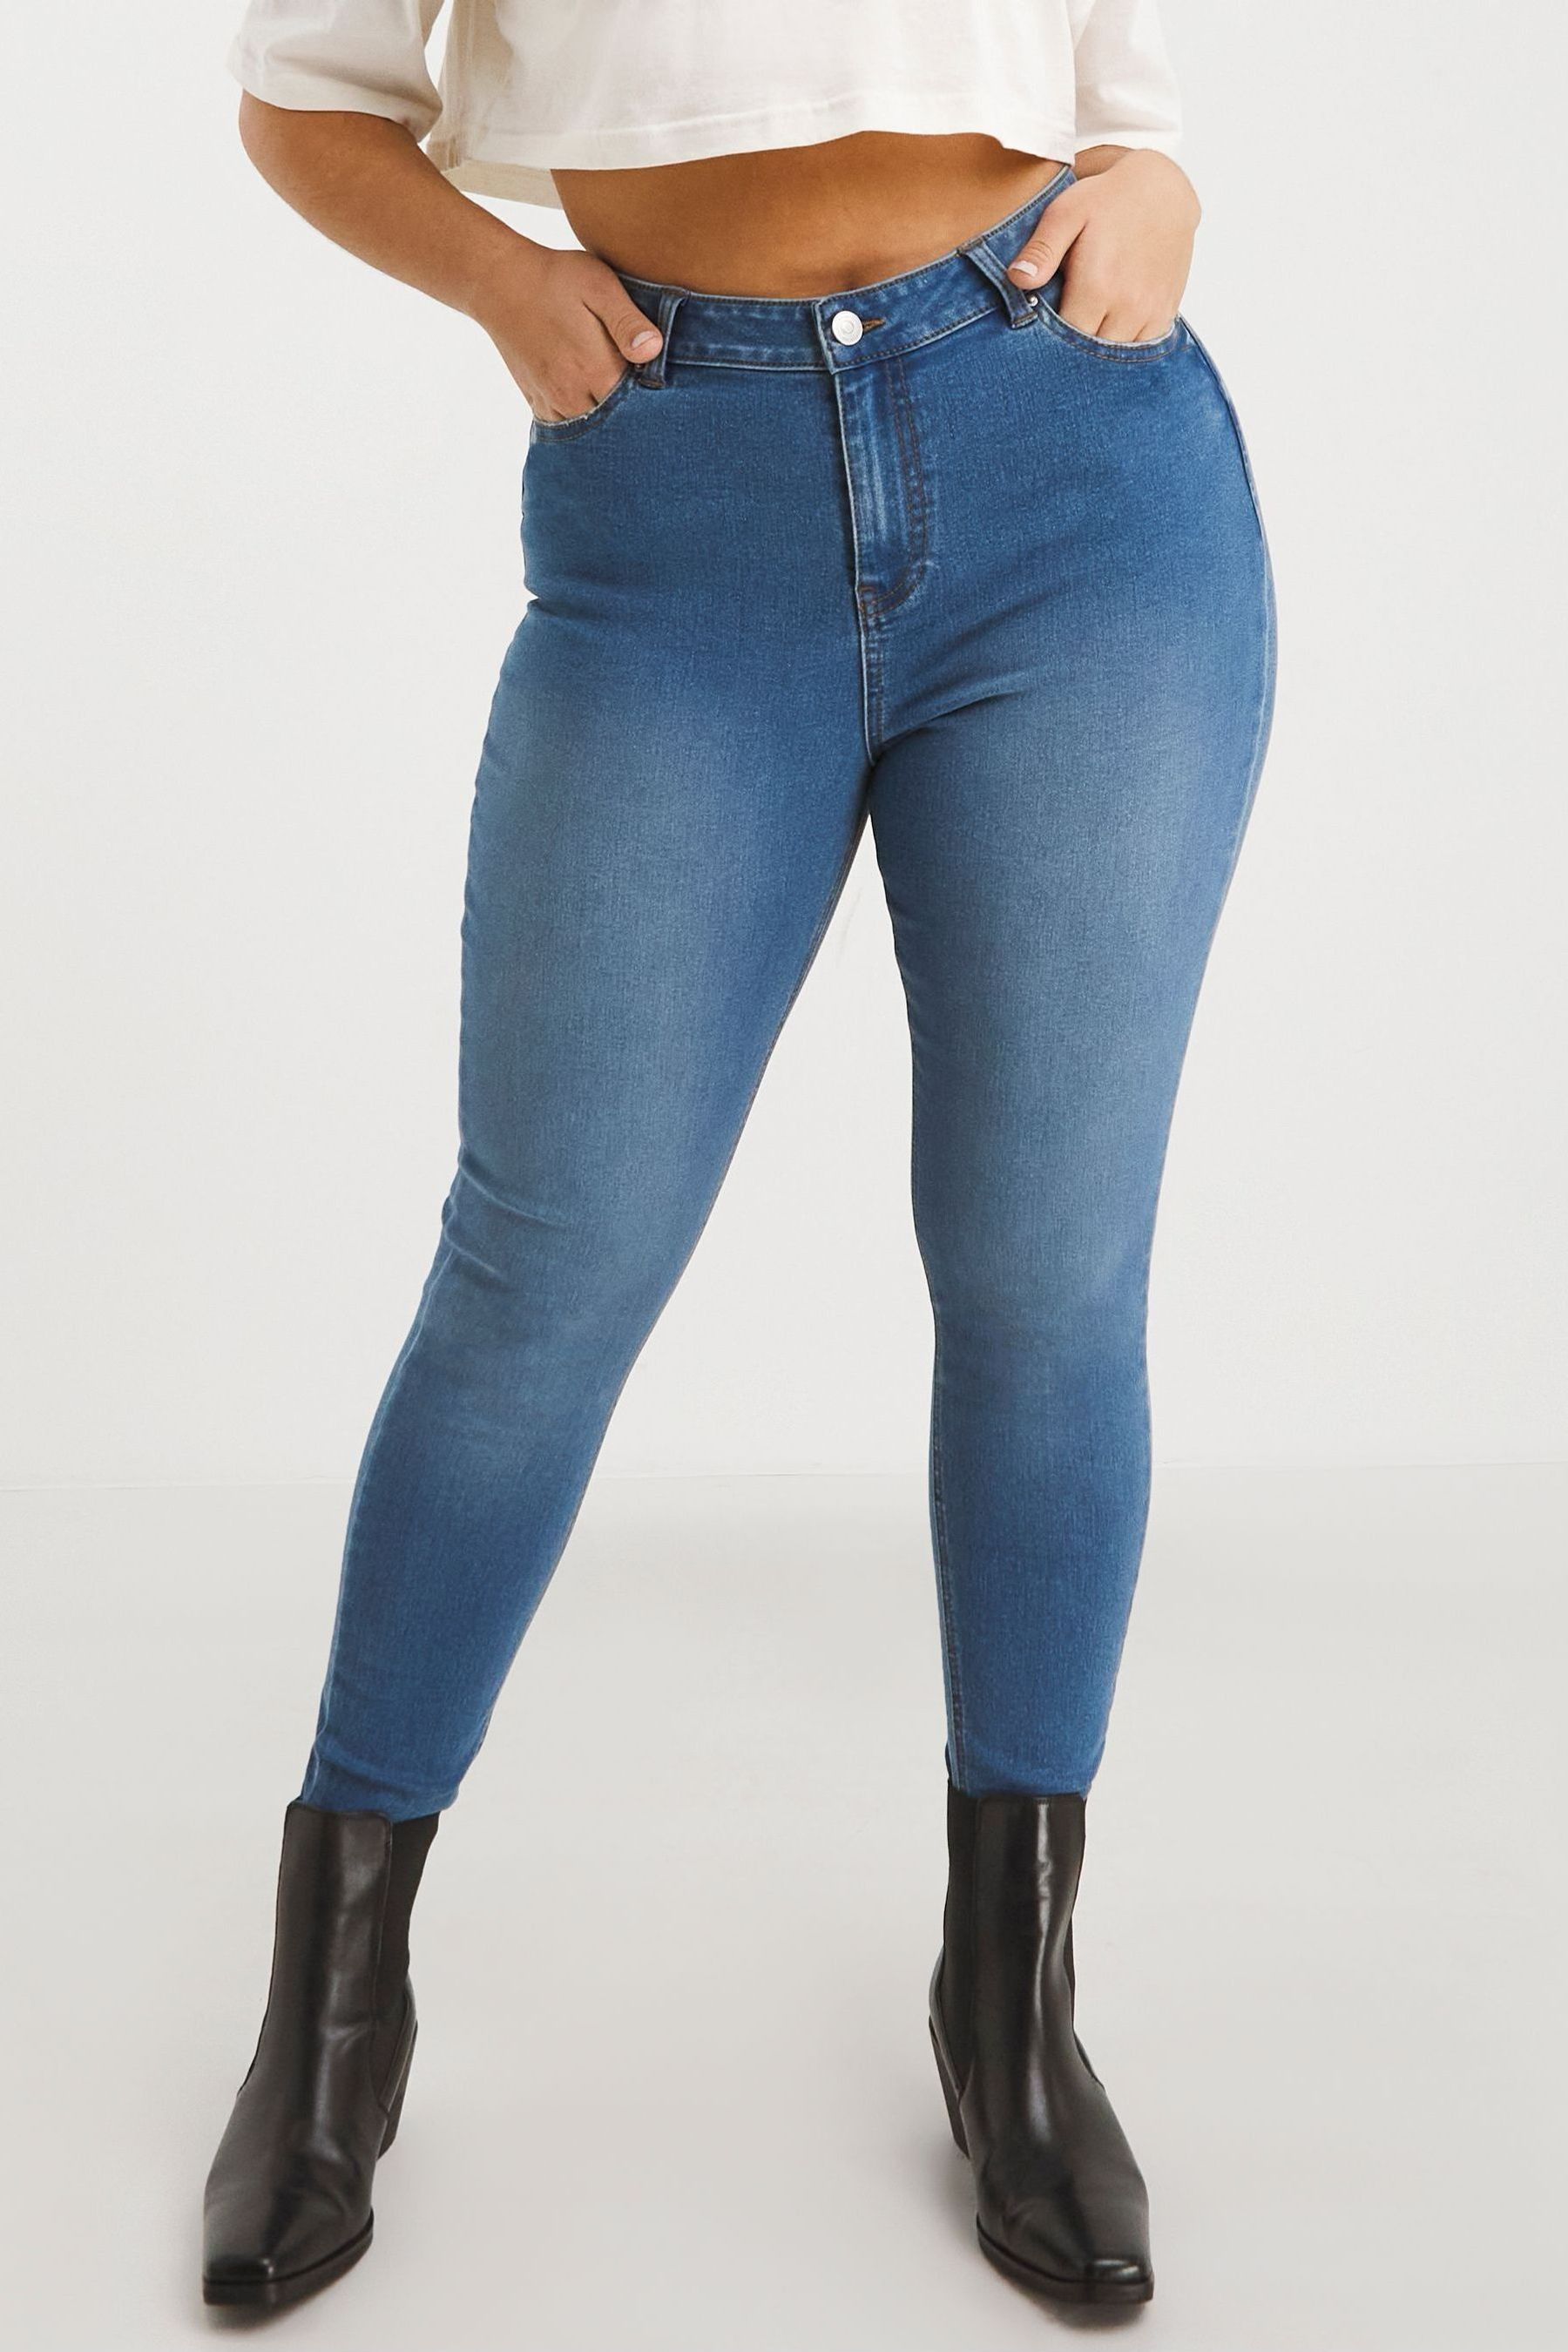 Узкие синие эластичные джинсы Lucy's с высокой талией Simply Be, синий